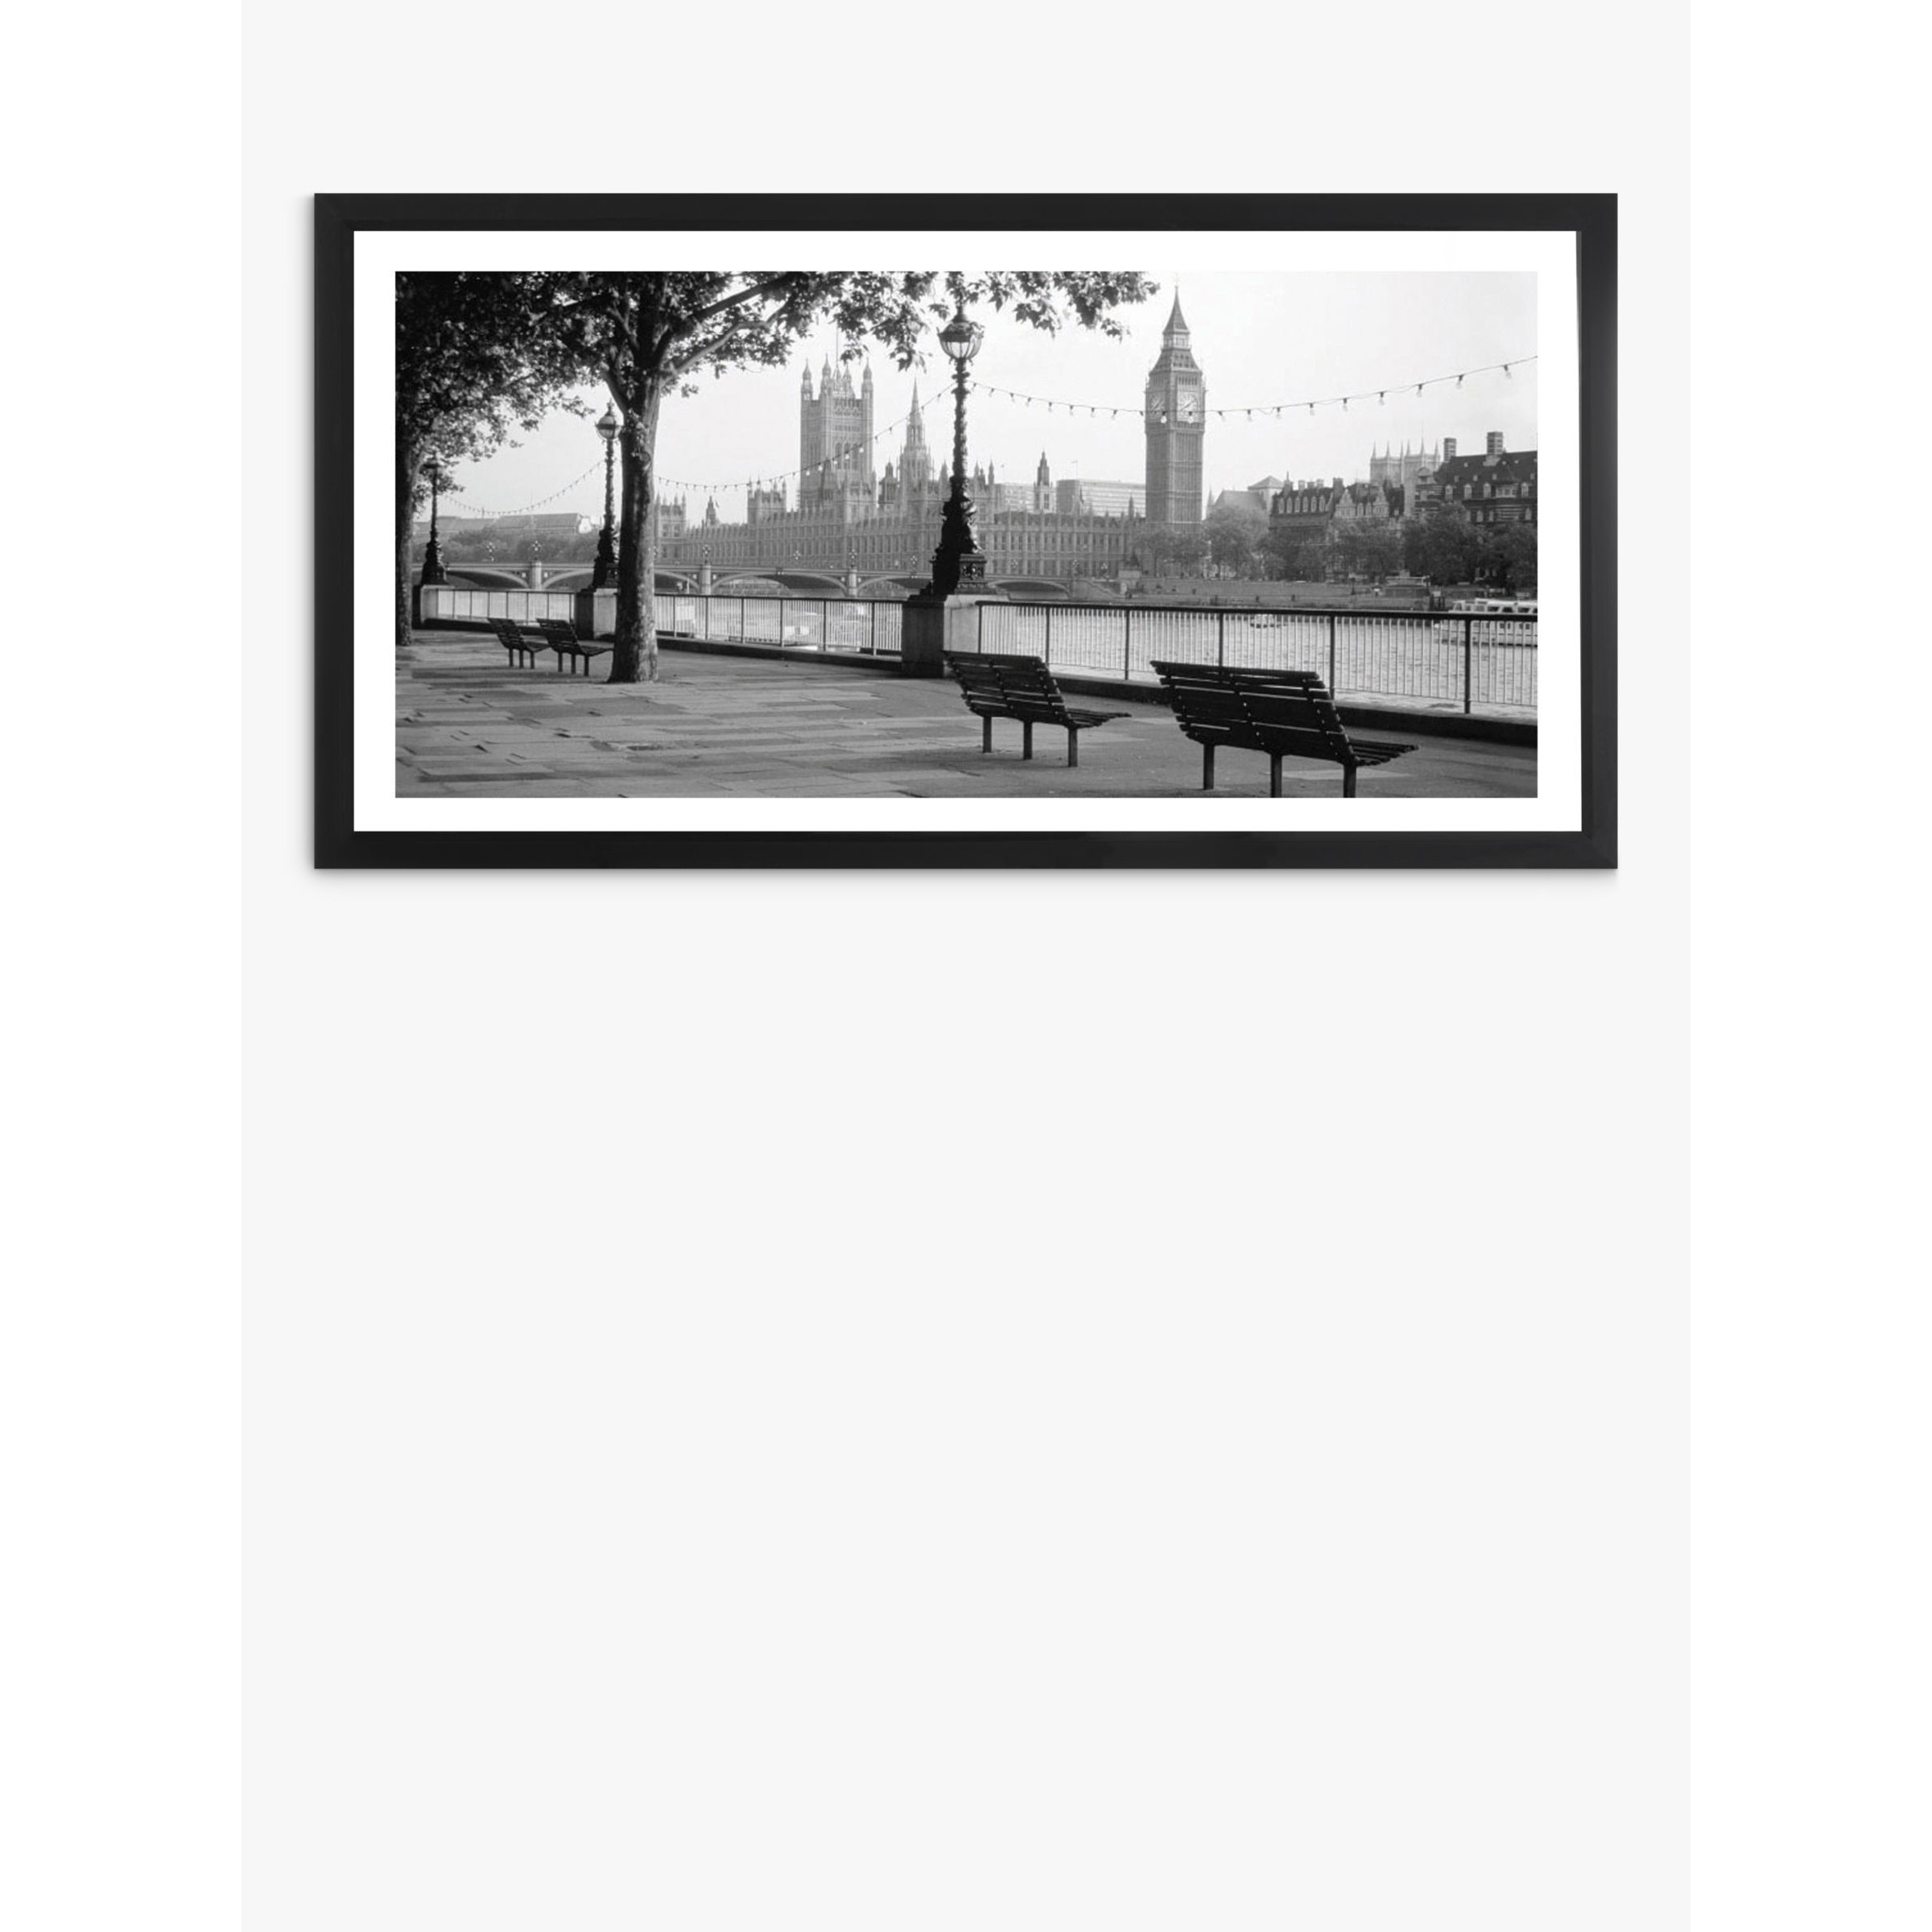 London Framed Print & Mount, 51 x 101cm, Black/White - image 1